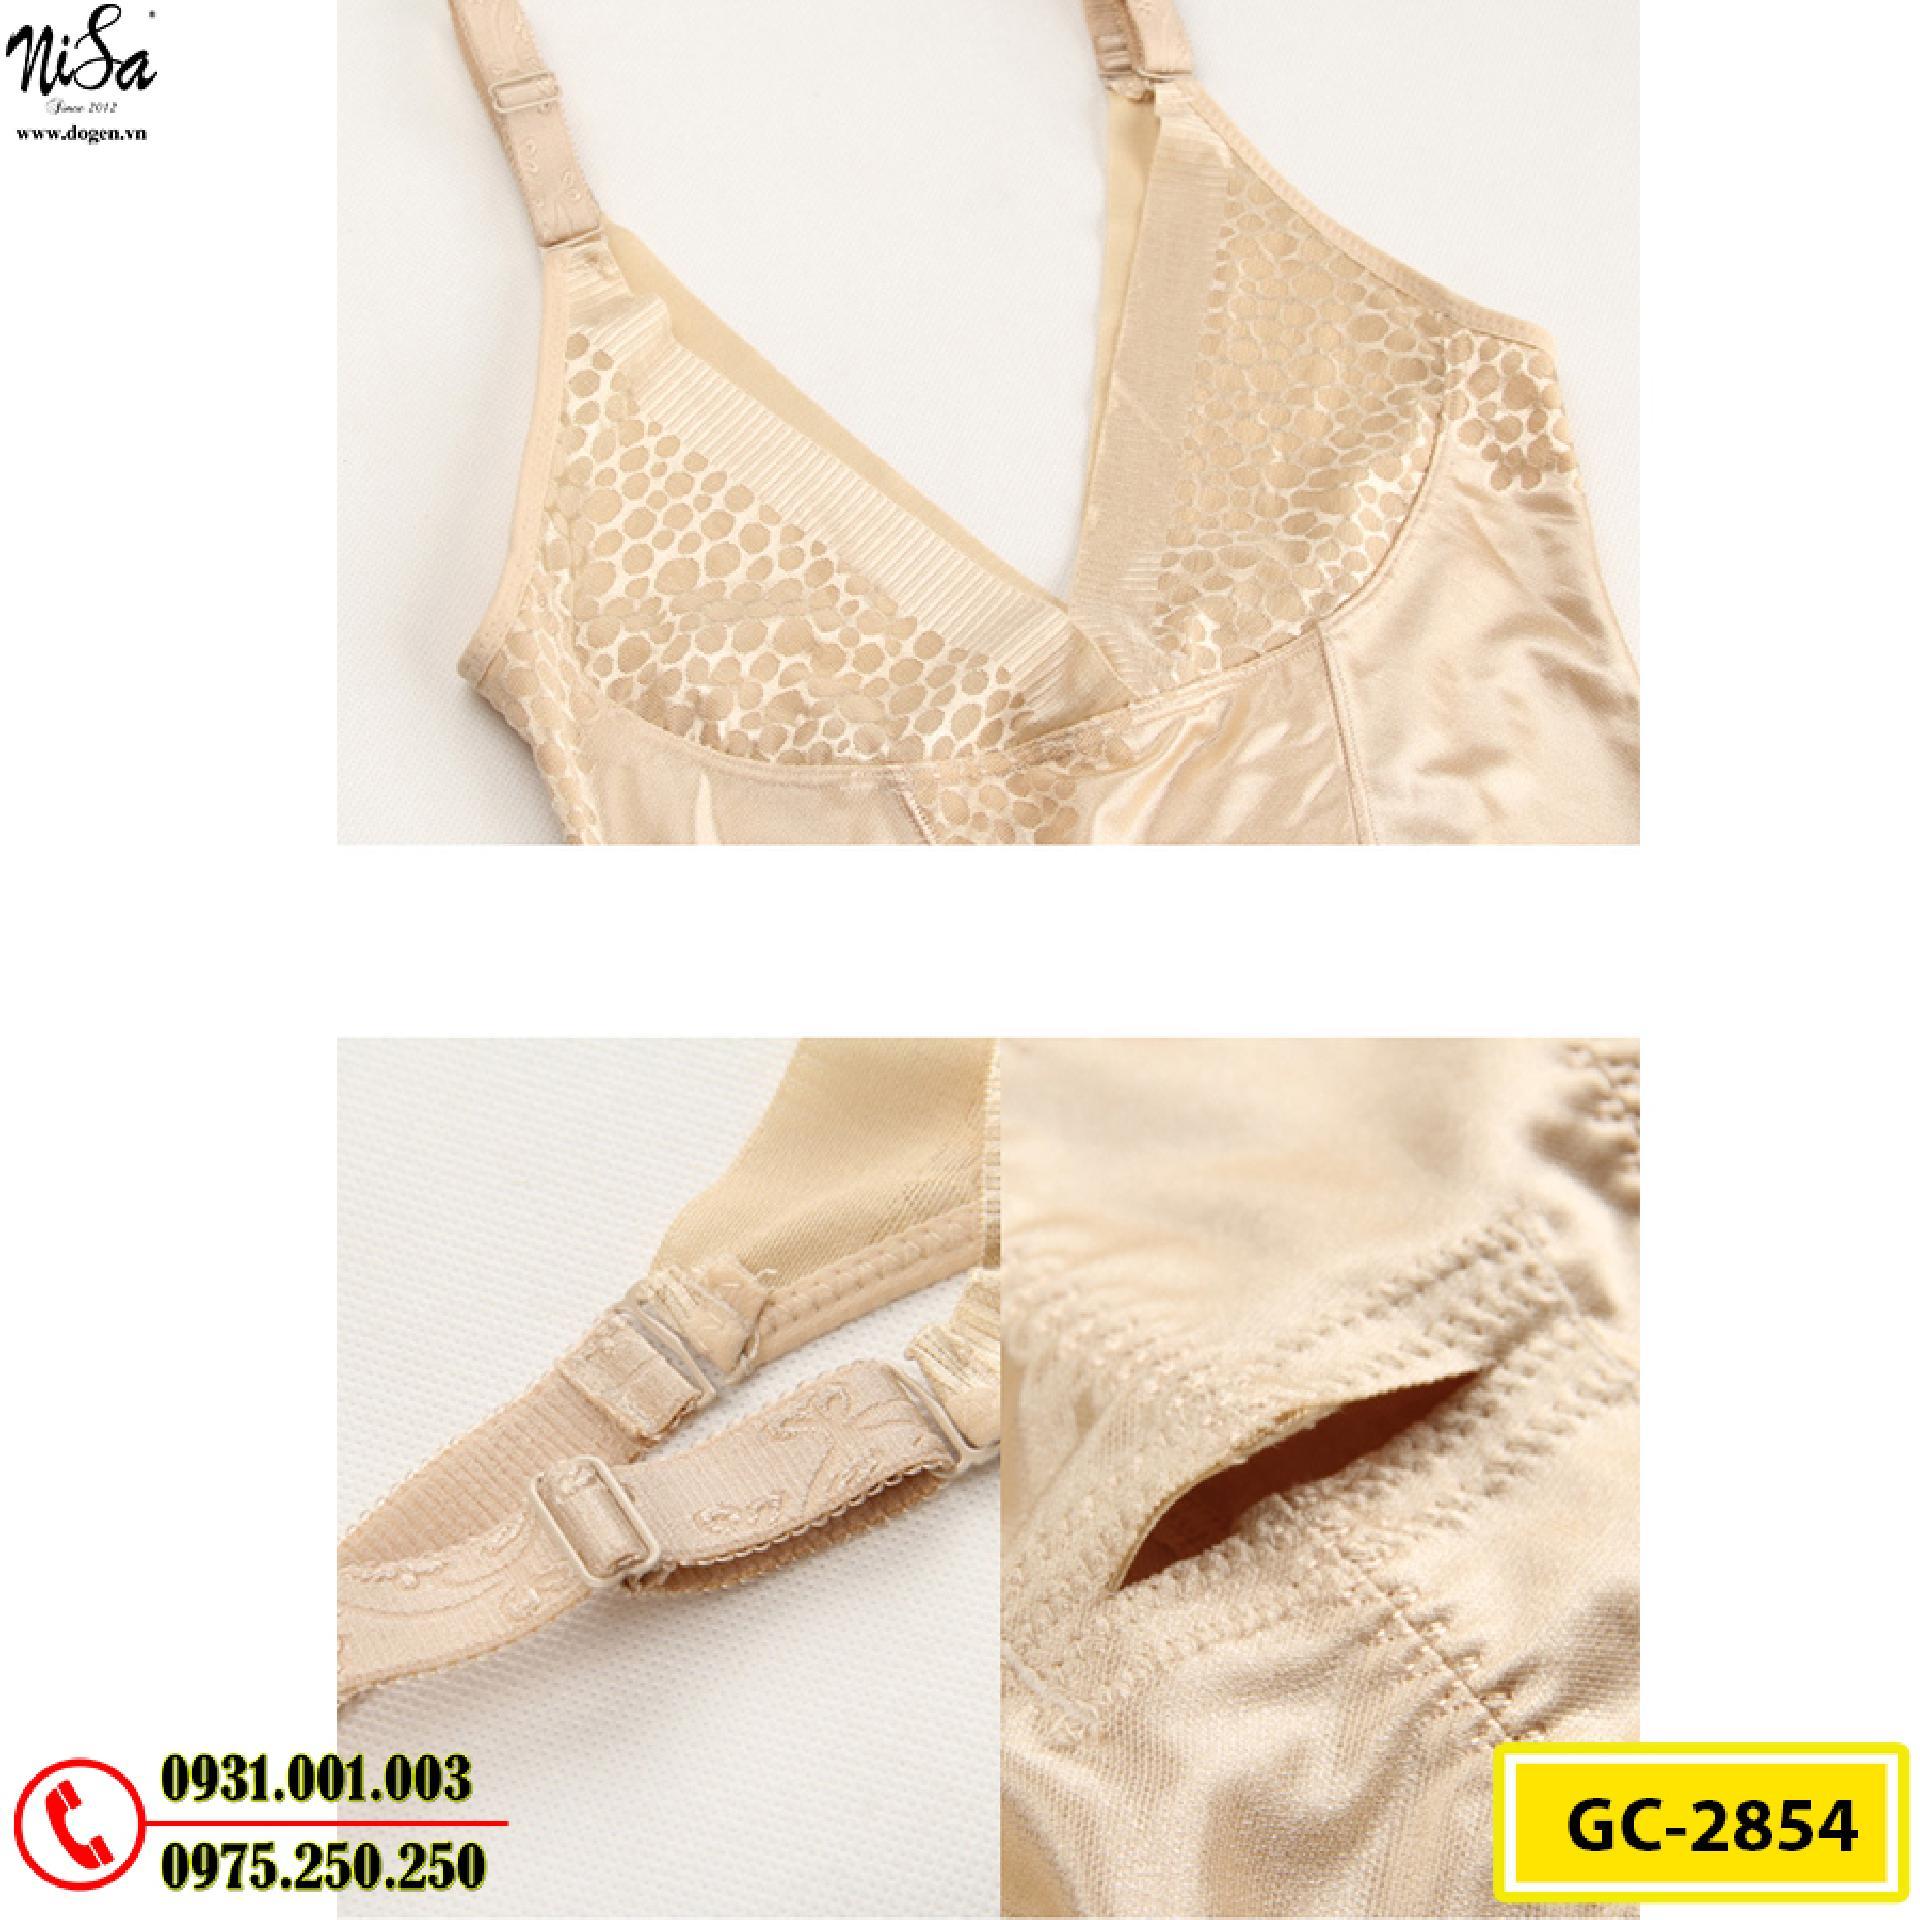 Bộ Đồ Lót Định Hình Bikini Liền Thân Thu Gọn Vòng Eo (Cod: GC-2854)